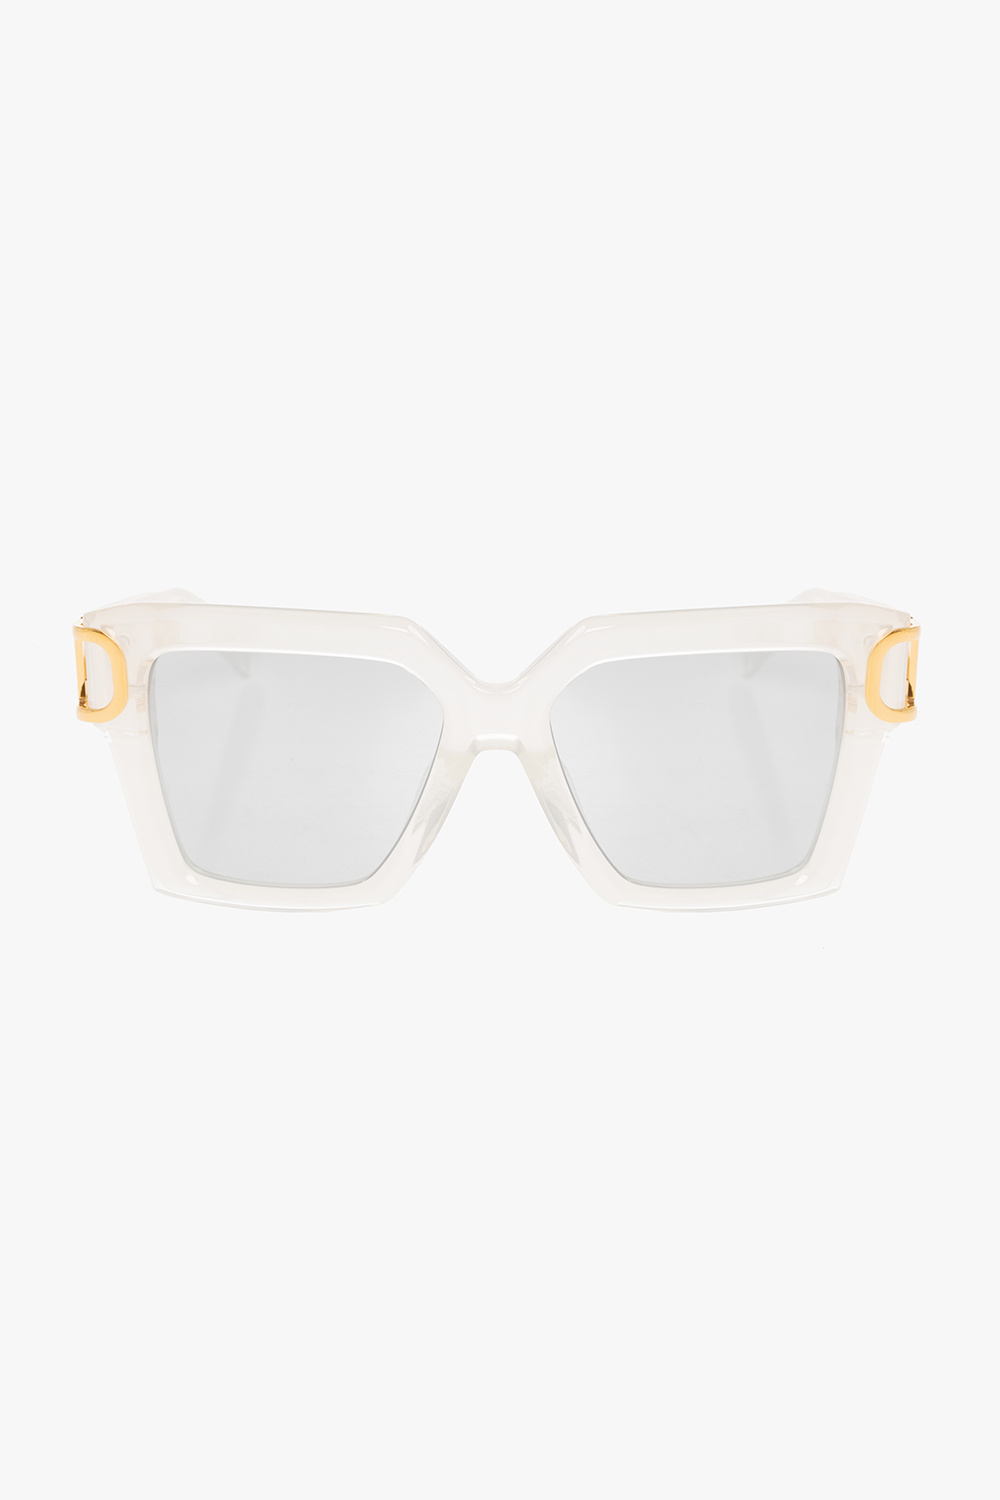 Valentino Eyewear gucci brown tortoiseshell sunglasses